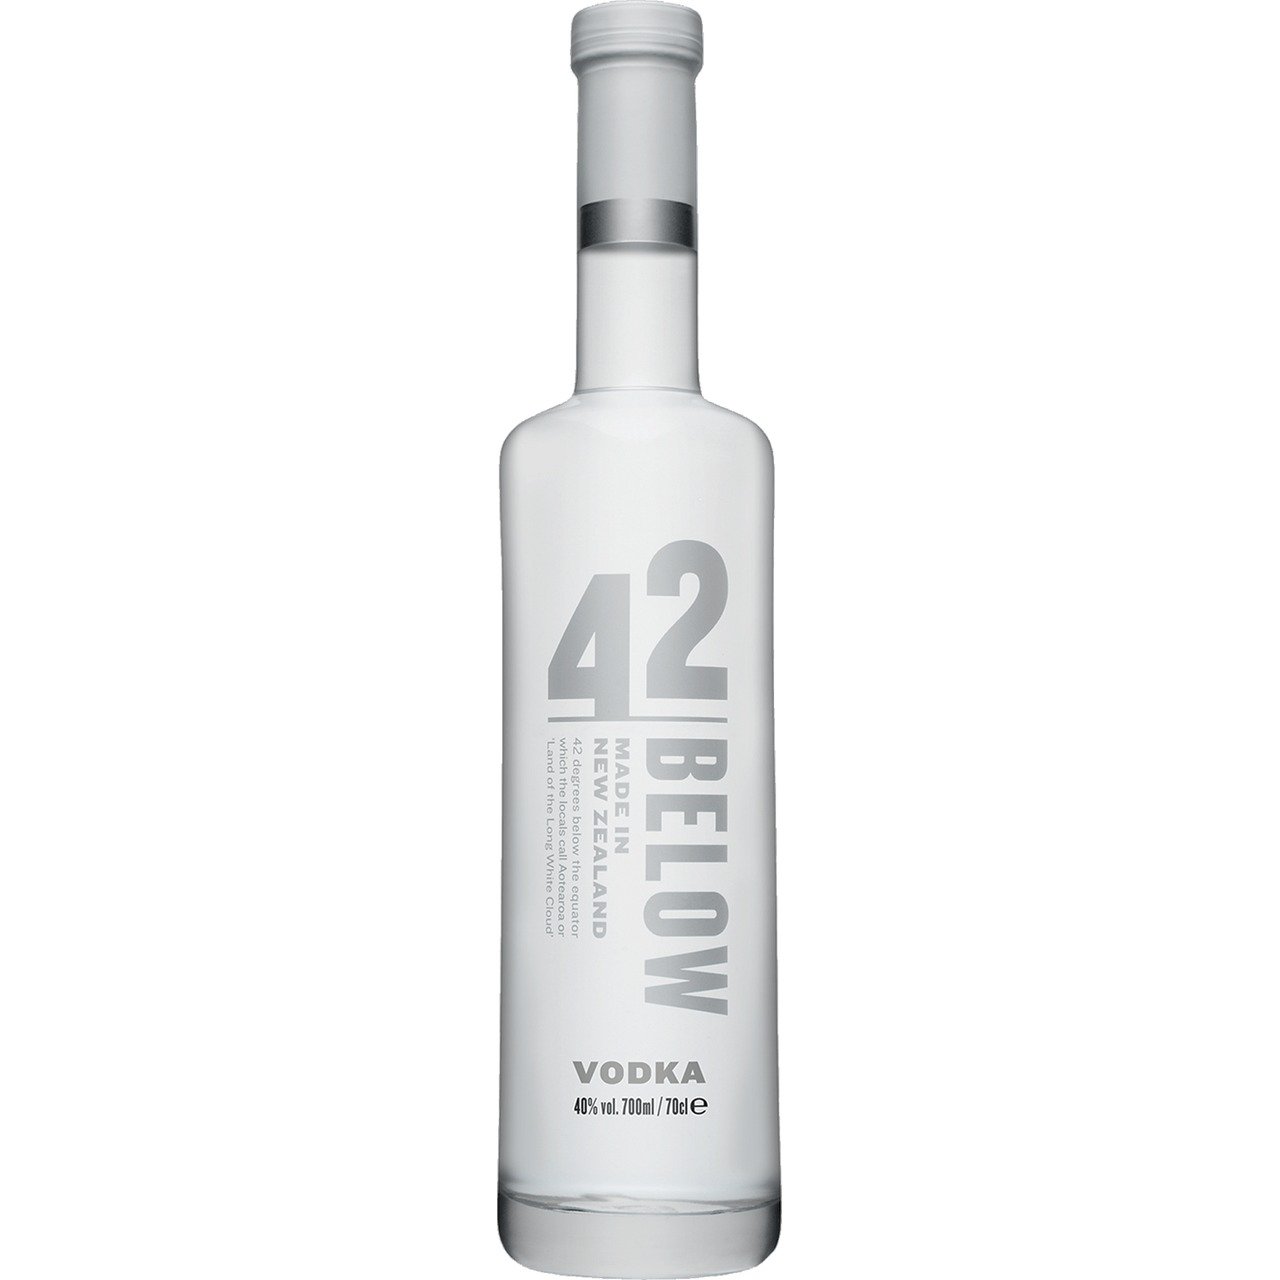 42 Below Pure Vodka 40% Vol. 0,7l